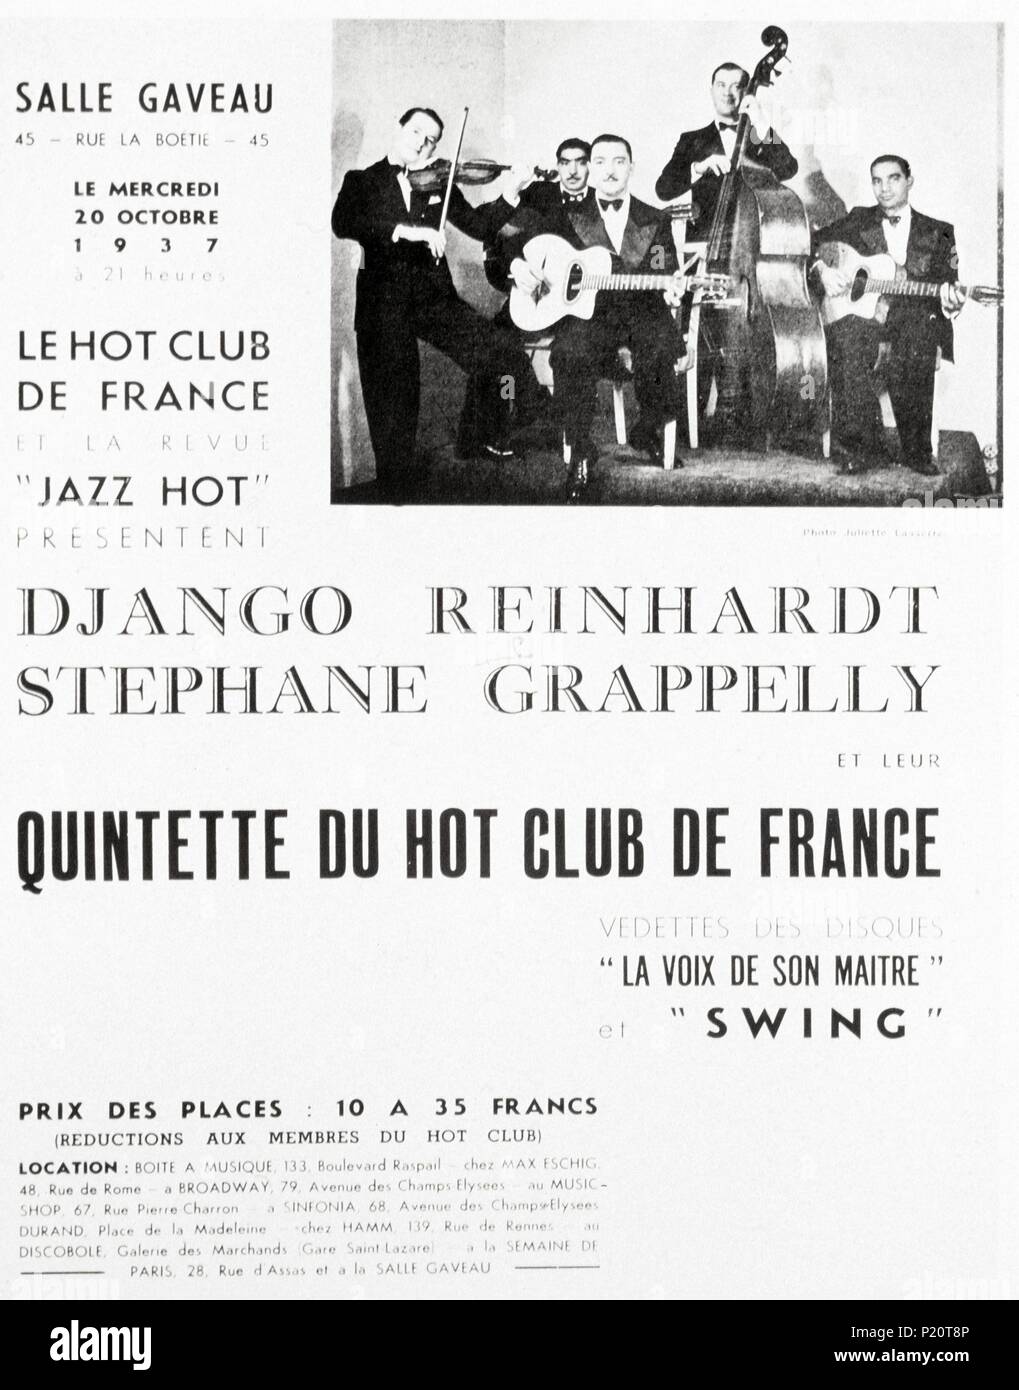 Publicité pour le Quintette Hot Club de Paris, France, 1937. Stéphane Grappelli (1908-1997) le violoniste de jazz français de premier plan en Europe pour le 'Jazz hot' dans les années 30, 1937. Banque D'Images